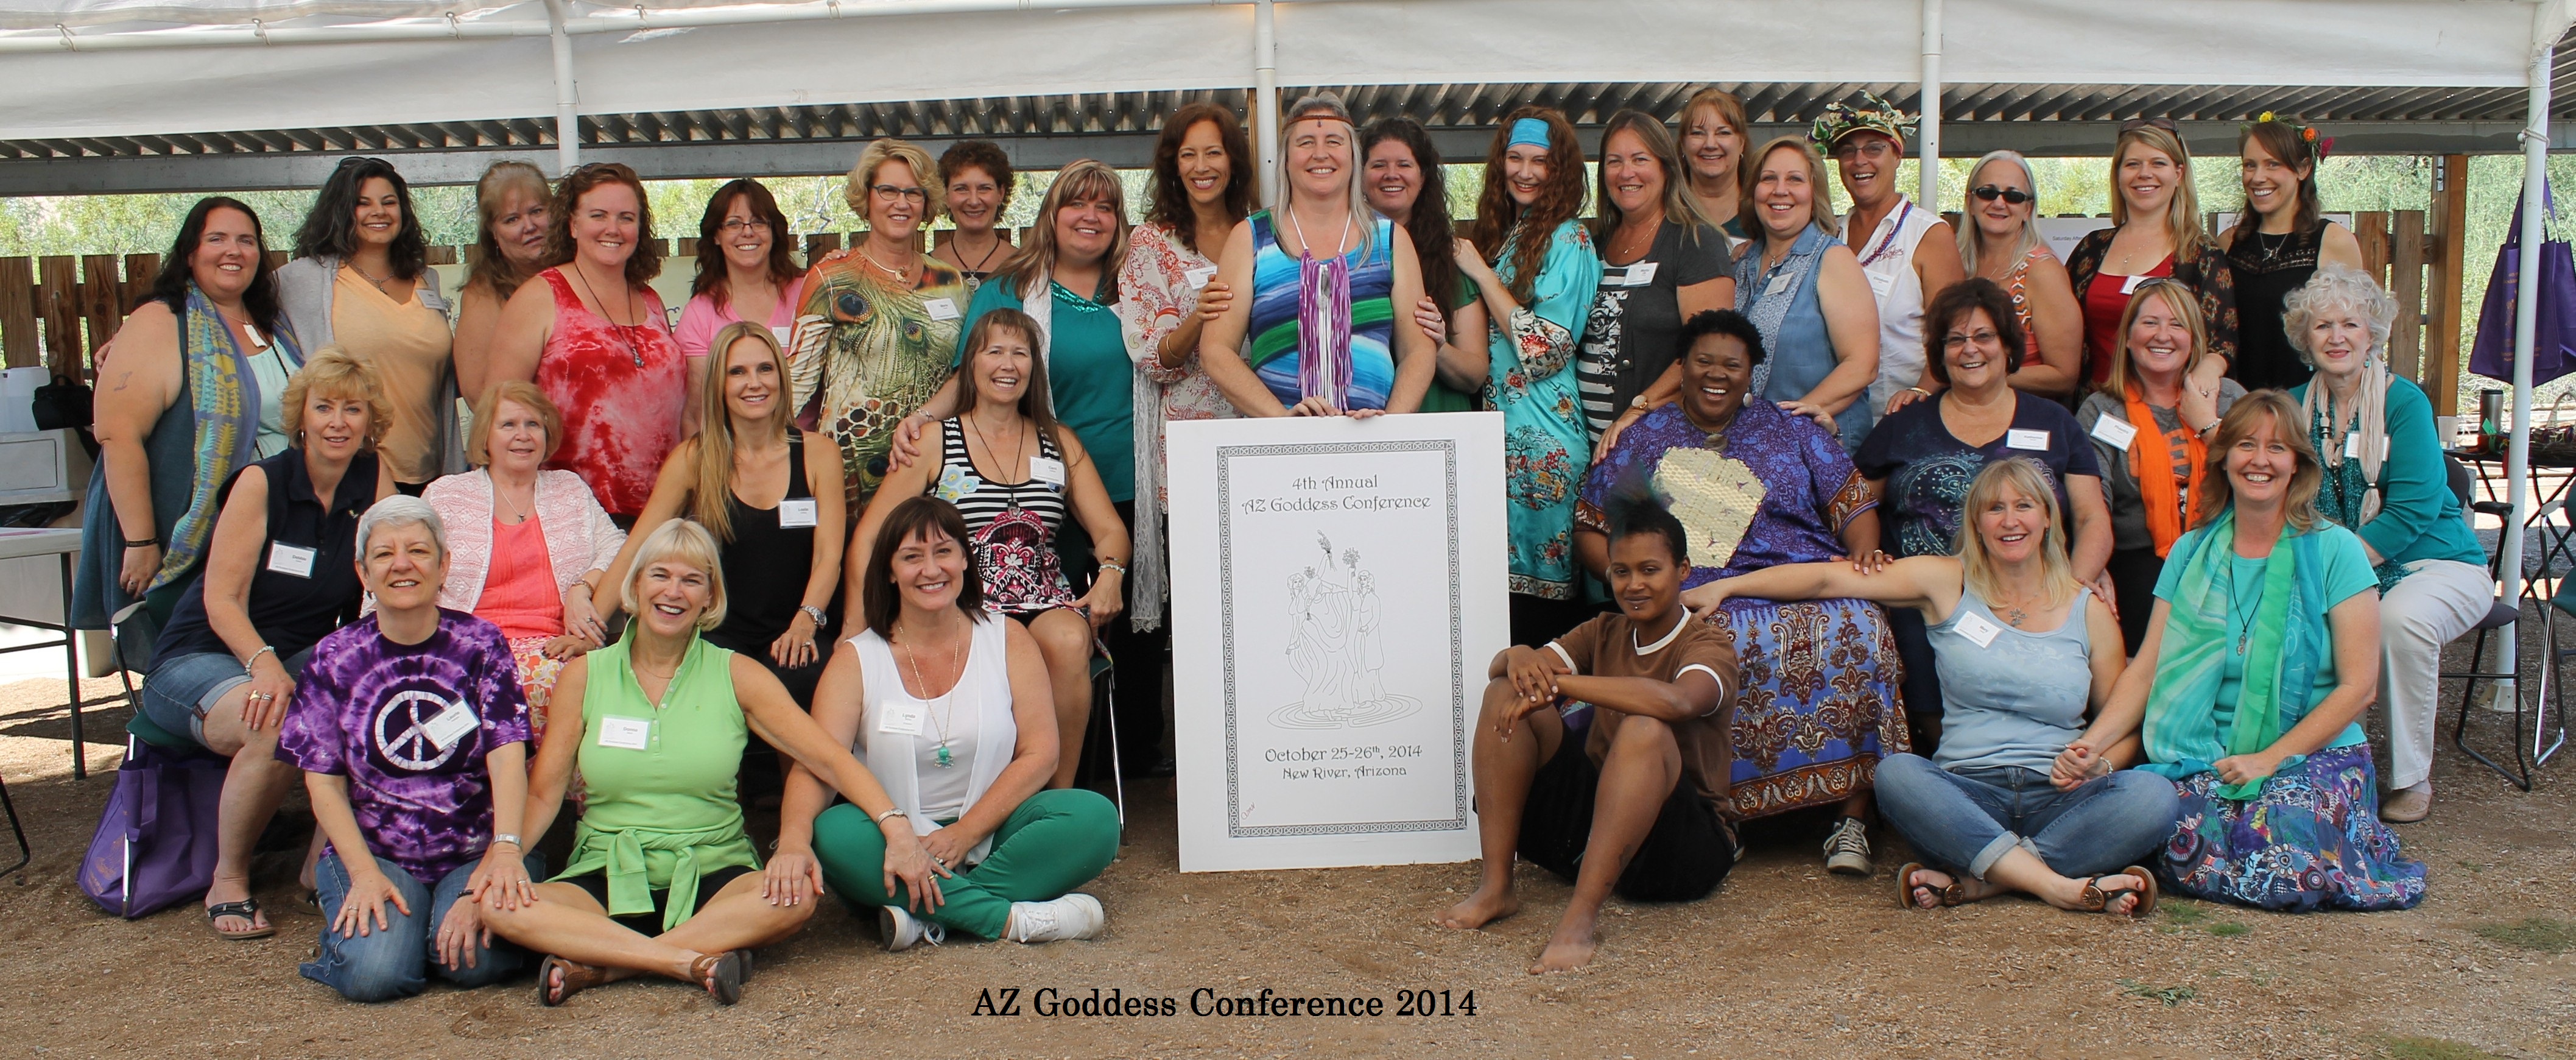 AZ Goddess Conference